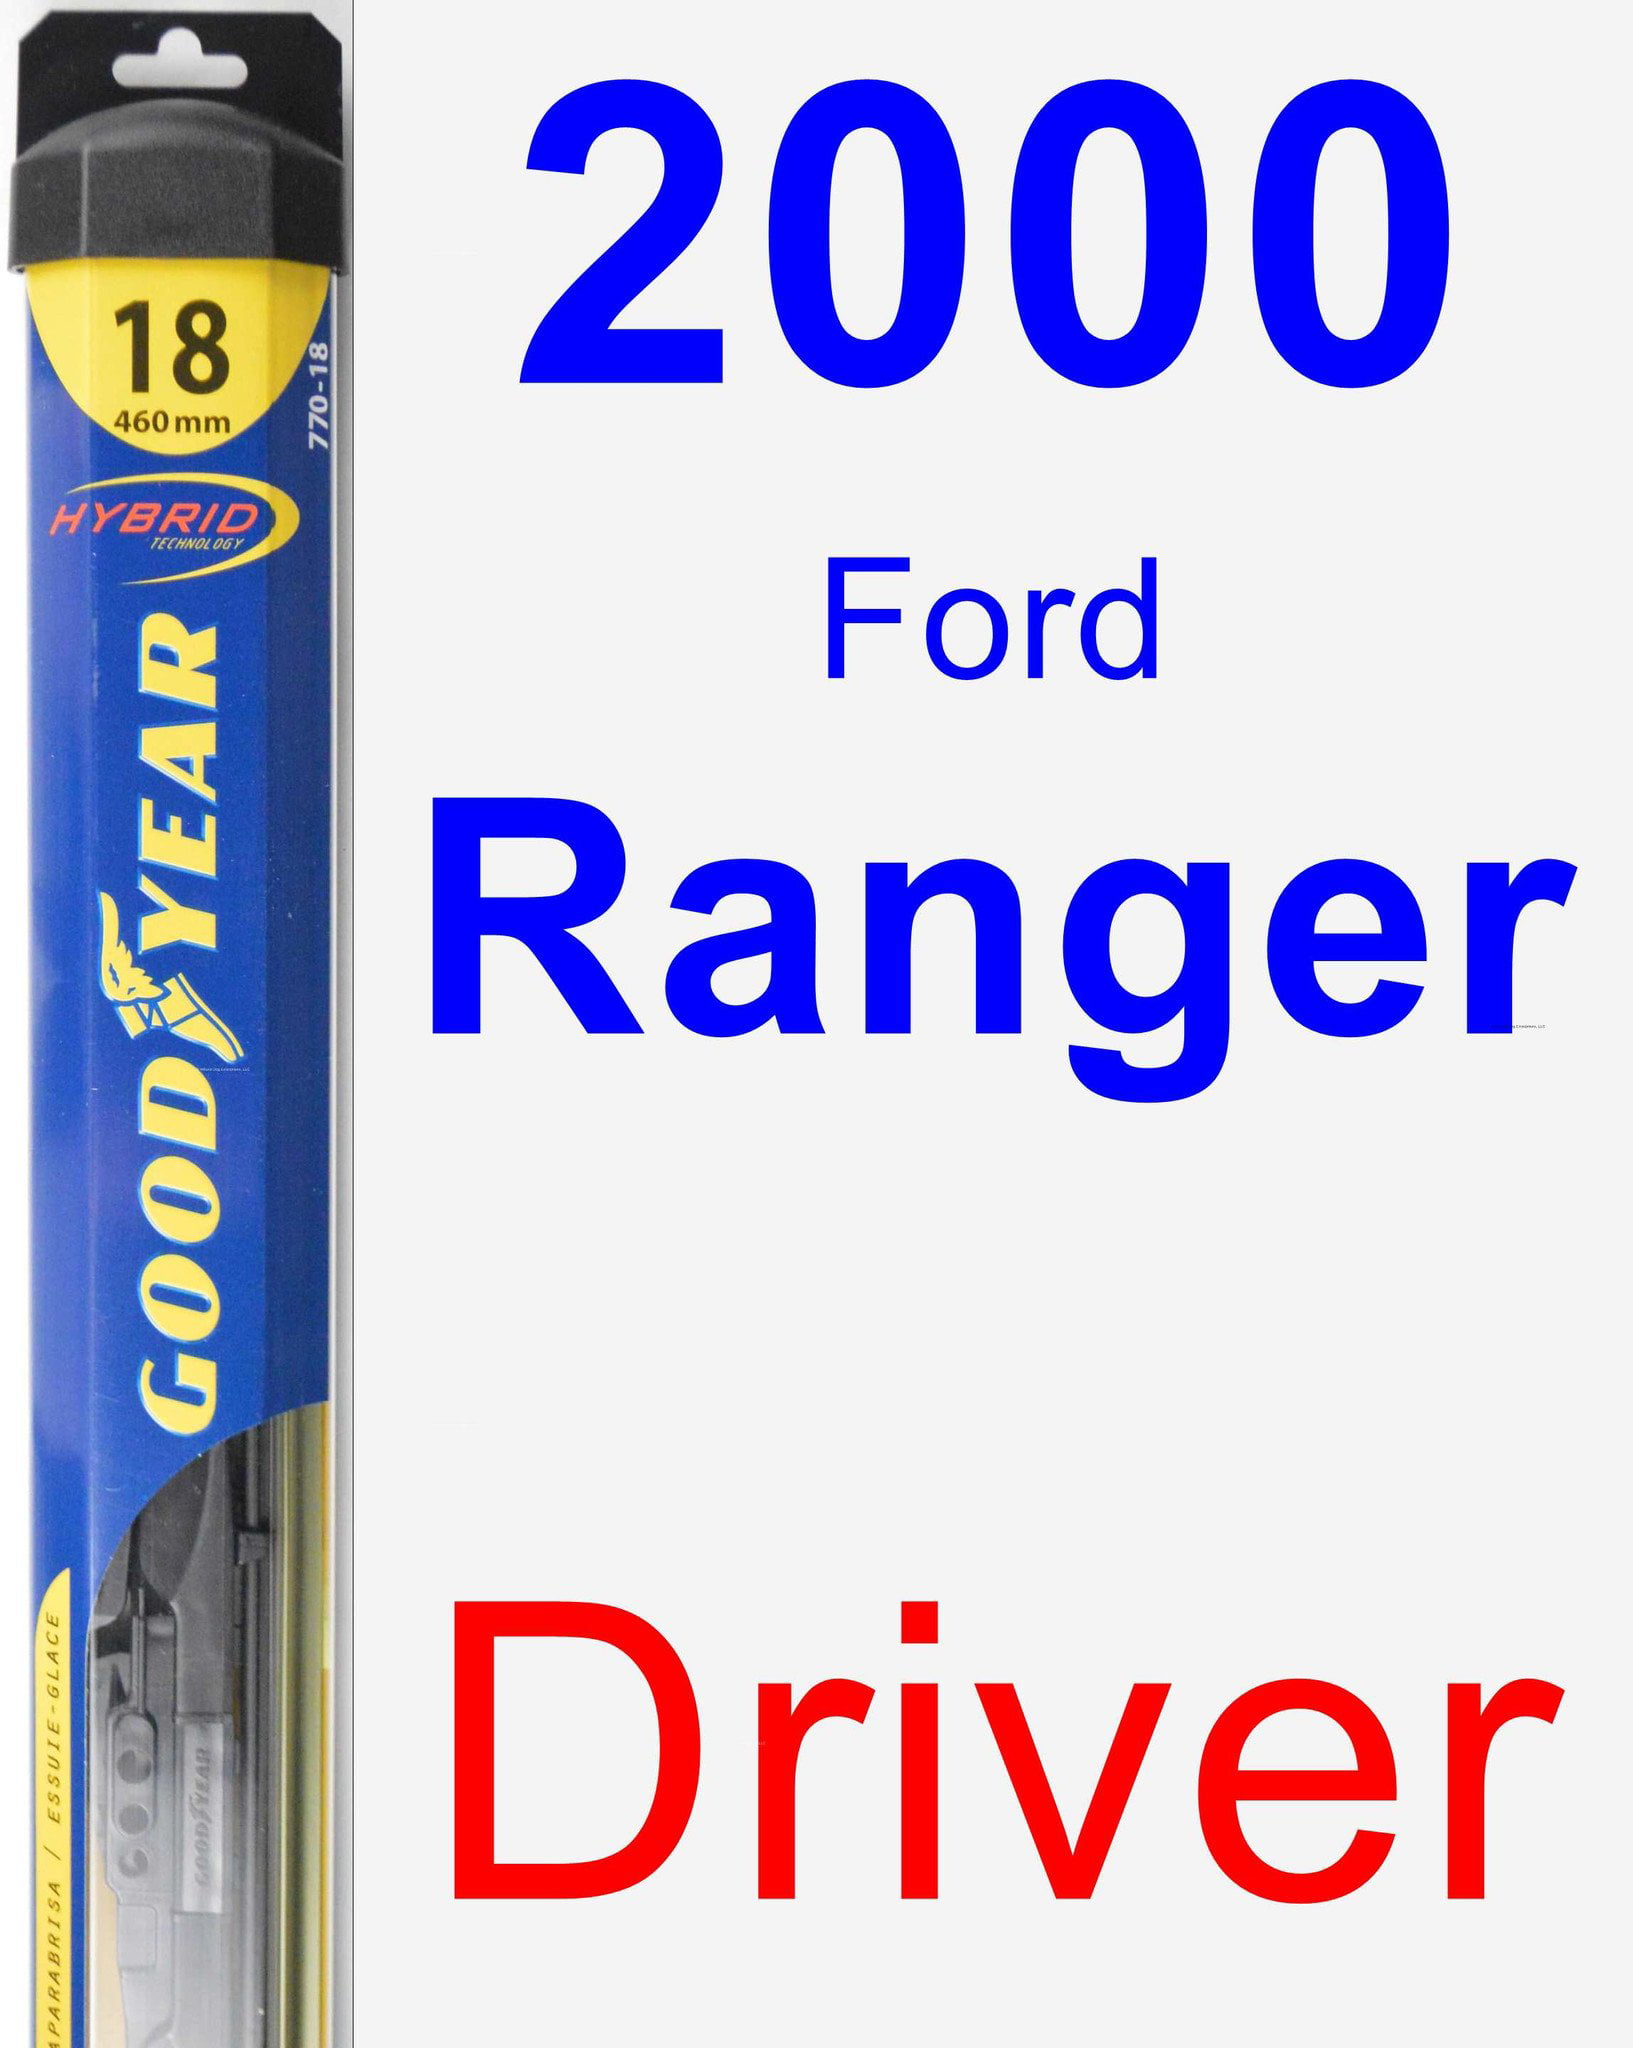 2000 Ford Ranger Driver Wiper Blade - Hybrid 